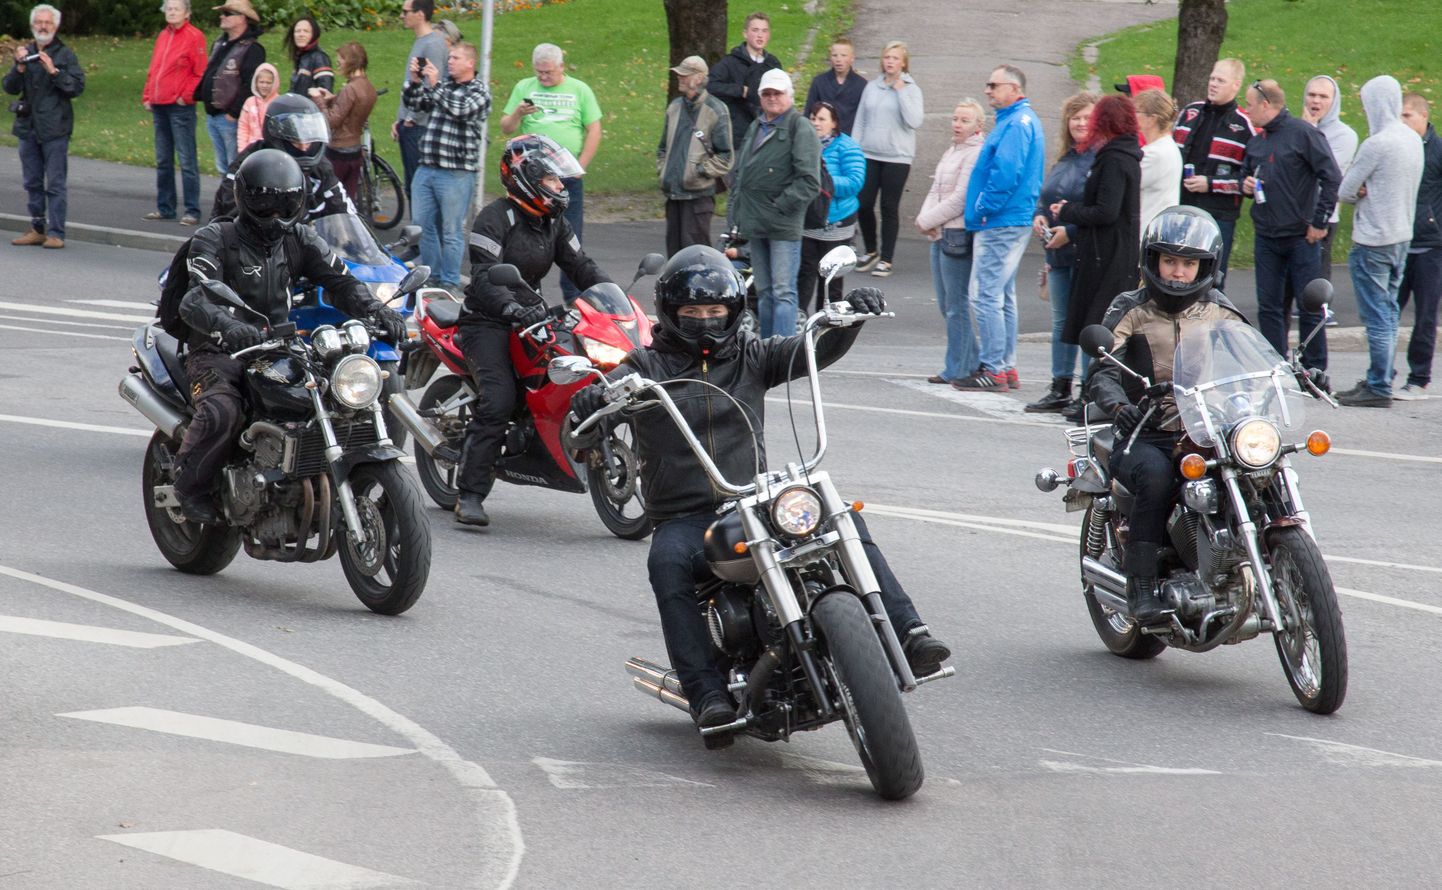 Tuhanded mootorratturid kogunevad laupäeval Pärnusse, et Supeluse tänaval ja Hedoni ees oma masinaid näidata ja paraadiga Eesti mootorrattahooaeg avada.